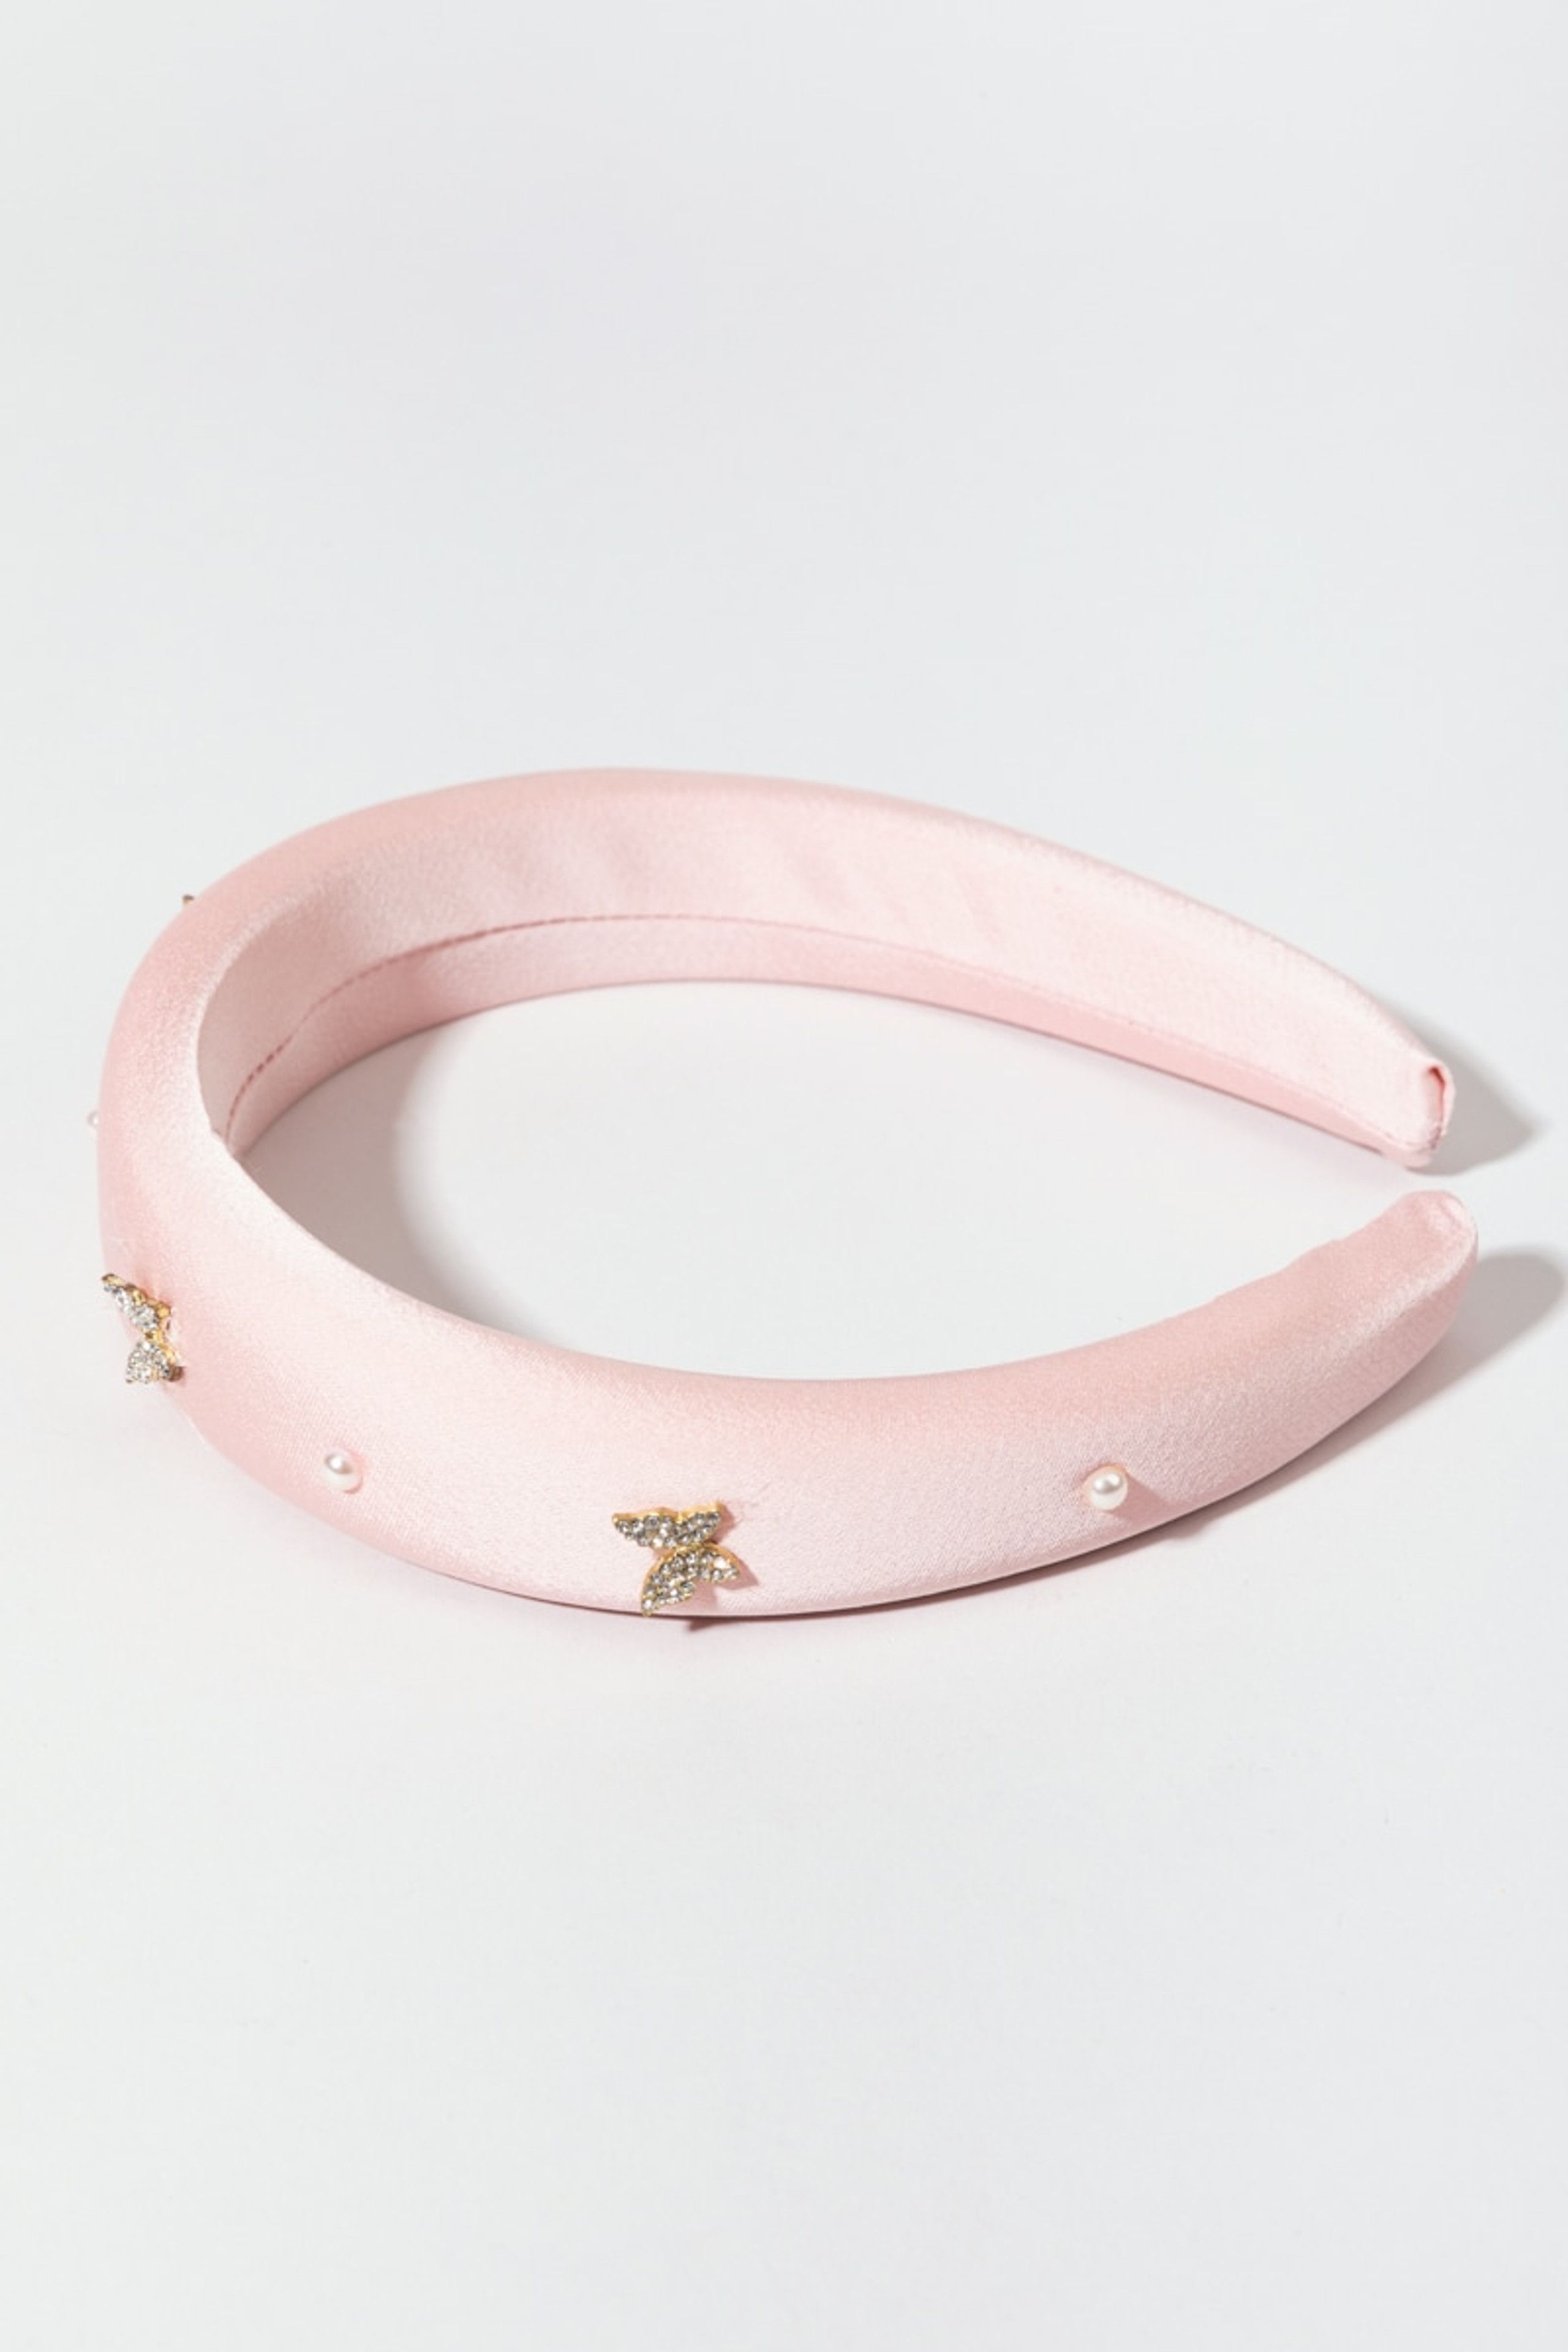 Mattie Padded Pink Butterfly Headband | Francesca's